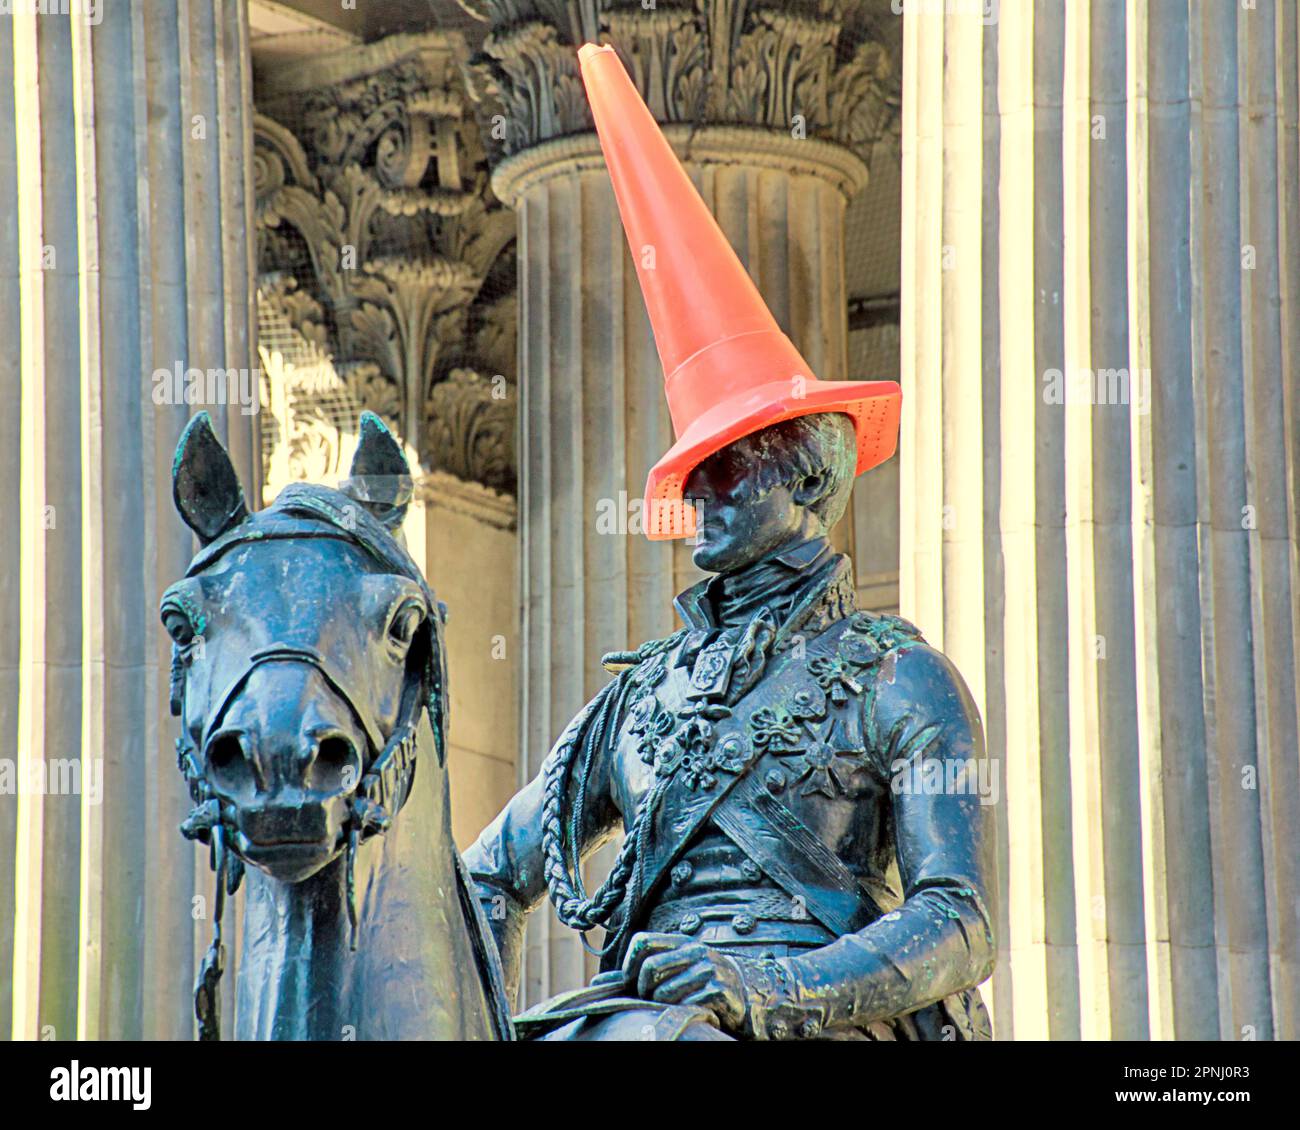 Glasgow, Écosse, Royaume-Uni 19h avril 2023. Météo au Royaume-Uni: Ensoleillé le duc obtient un nouveau chapeau rouge inhabituel à l'extérieur du musée de l'art moderne par beau temps. Crédit Gerard Ferry/Alay Live News Banque D'Images